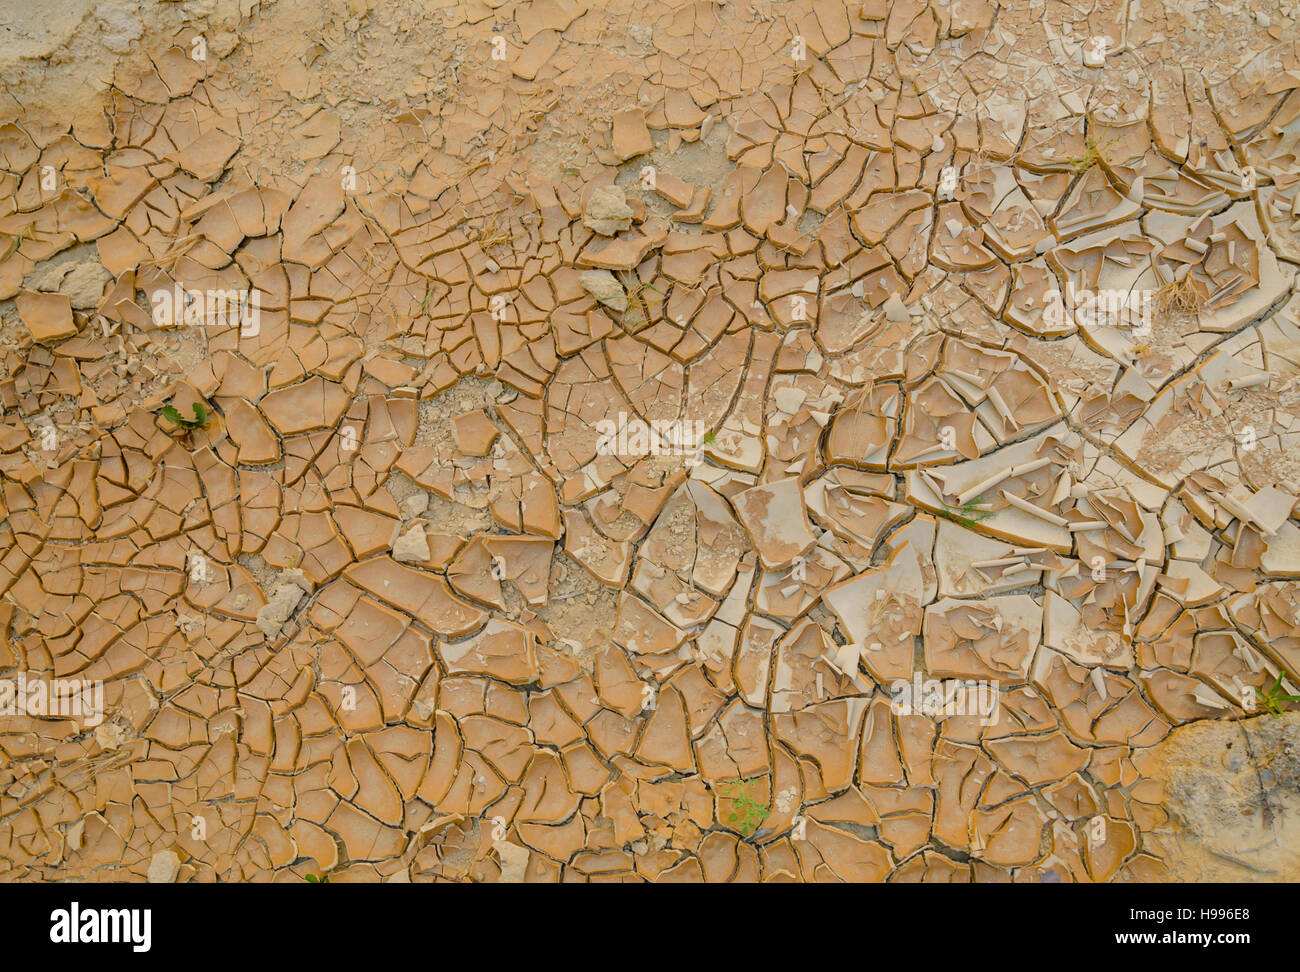 La sécheresse du sol fissuré en lit de rivière à sec du désert de l'Angola Namibe. Les fissures un joli modèle et certaines mauvaises herbes et l'herbe sont de plus en plus entre eux. Banque D'Images